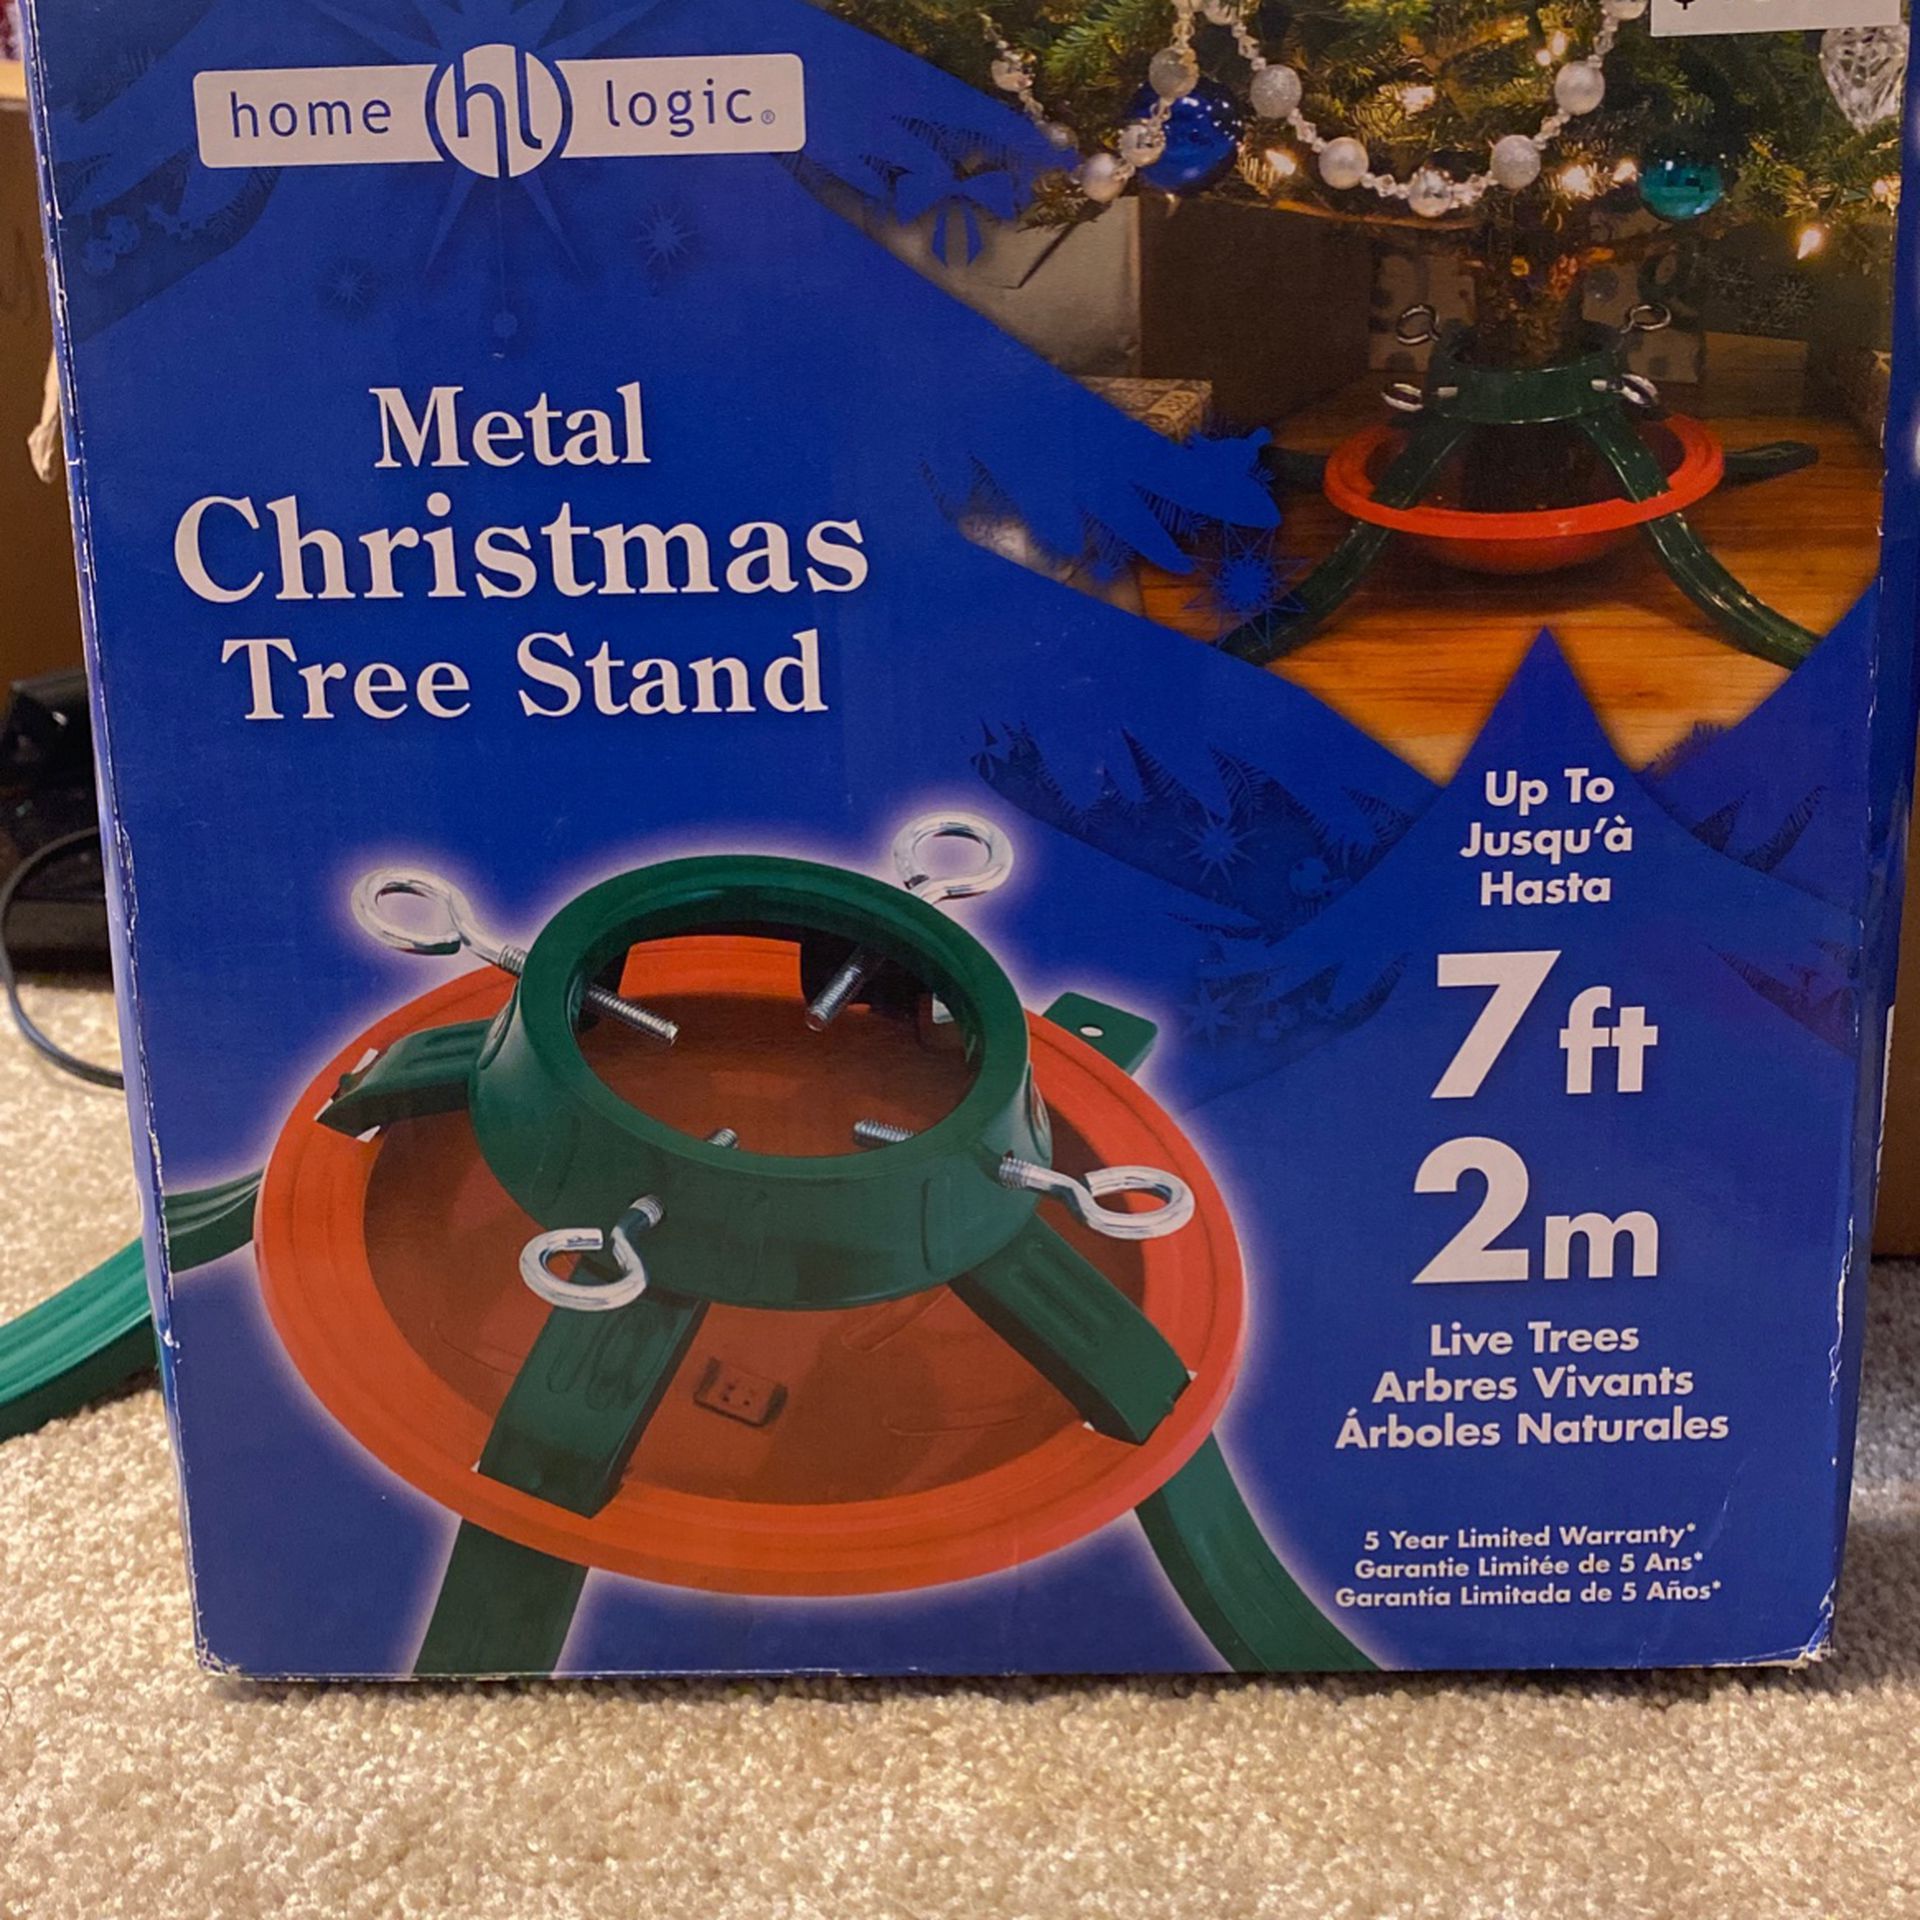 Metal Christmas tree stand